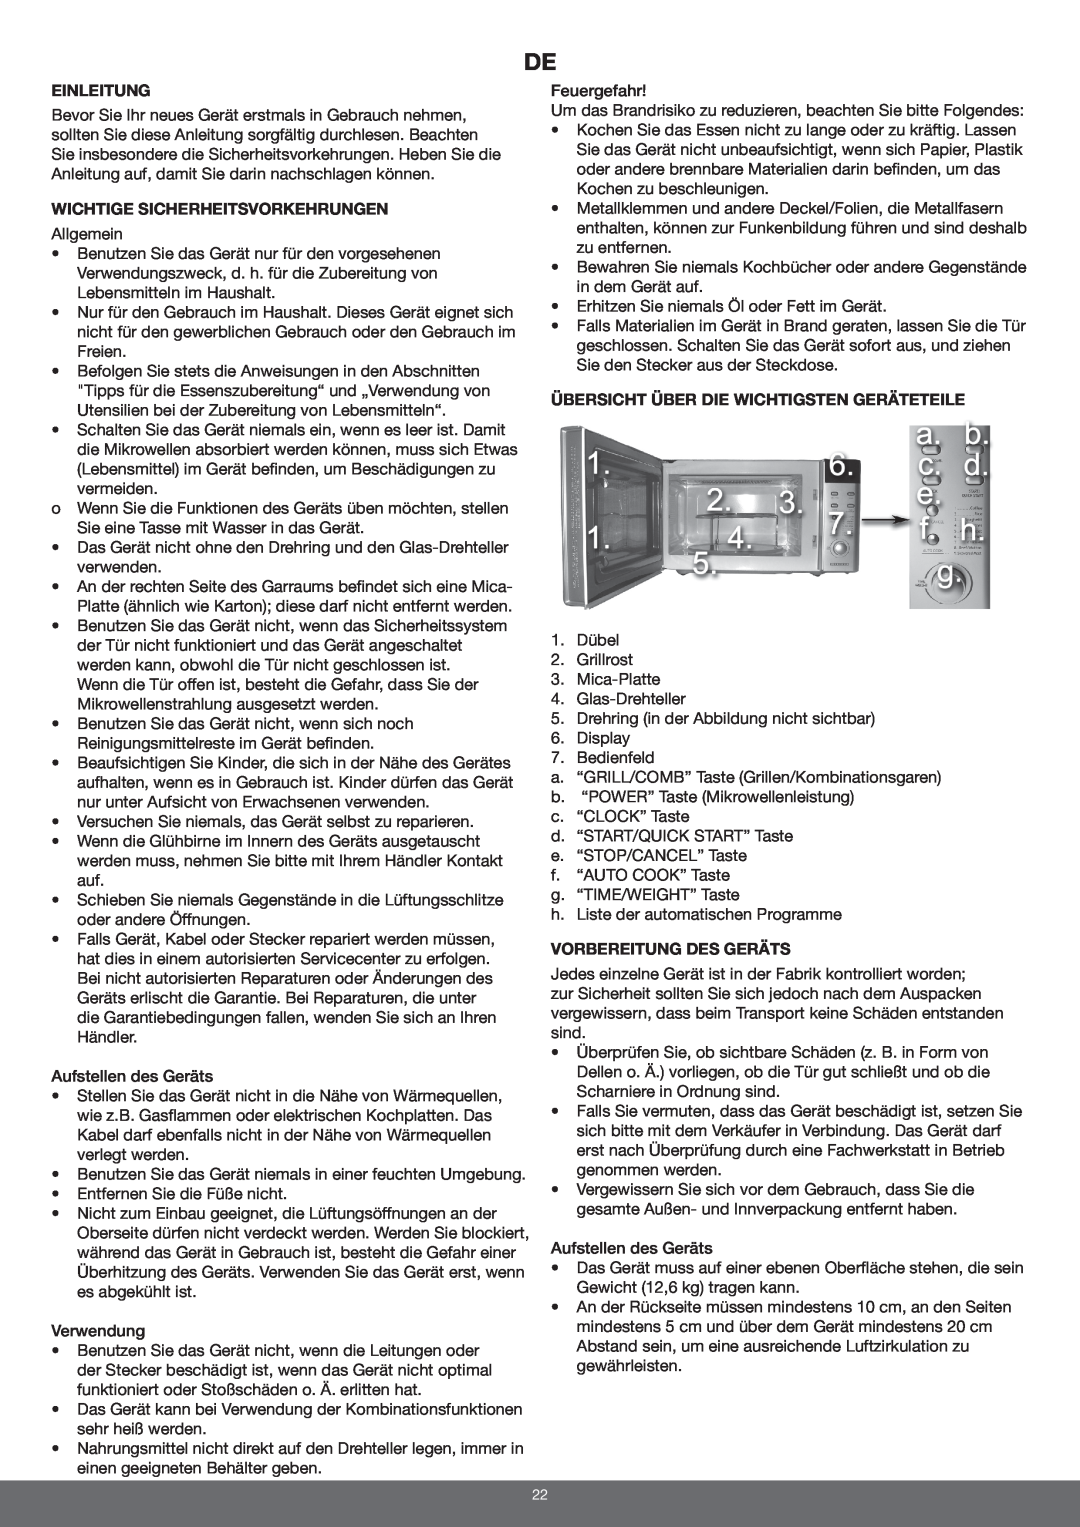 Melissa 653-092/093 manual Einleitung, Wichtige Sicherheitsvorkehrungen, Übersicht Über Die Wichtigsten Geräteteile 